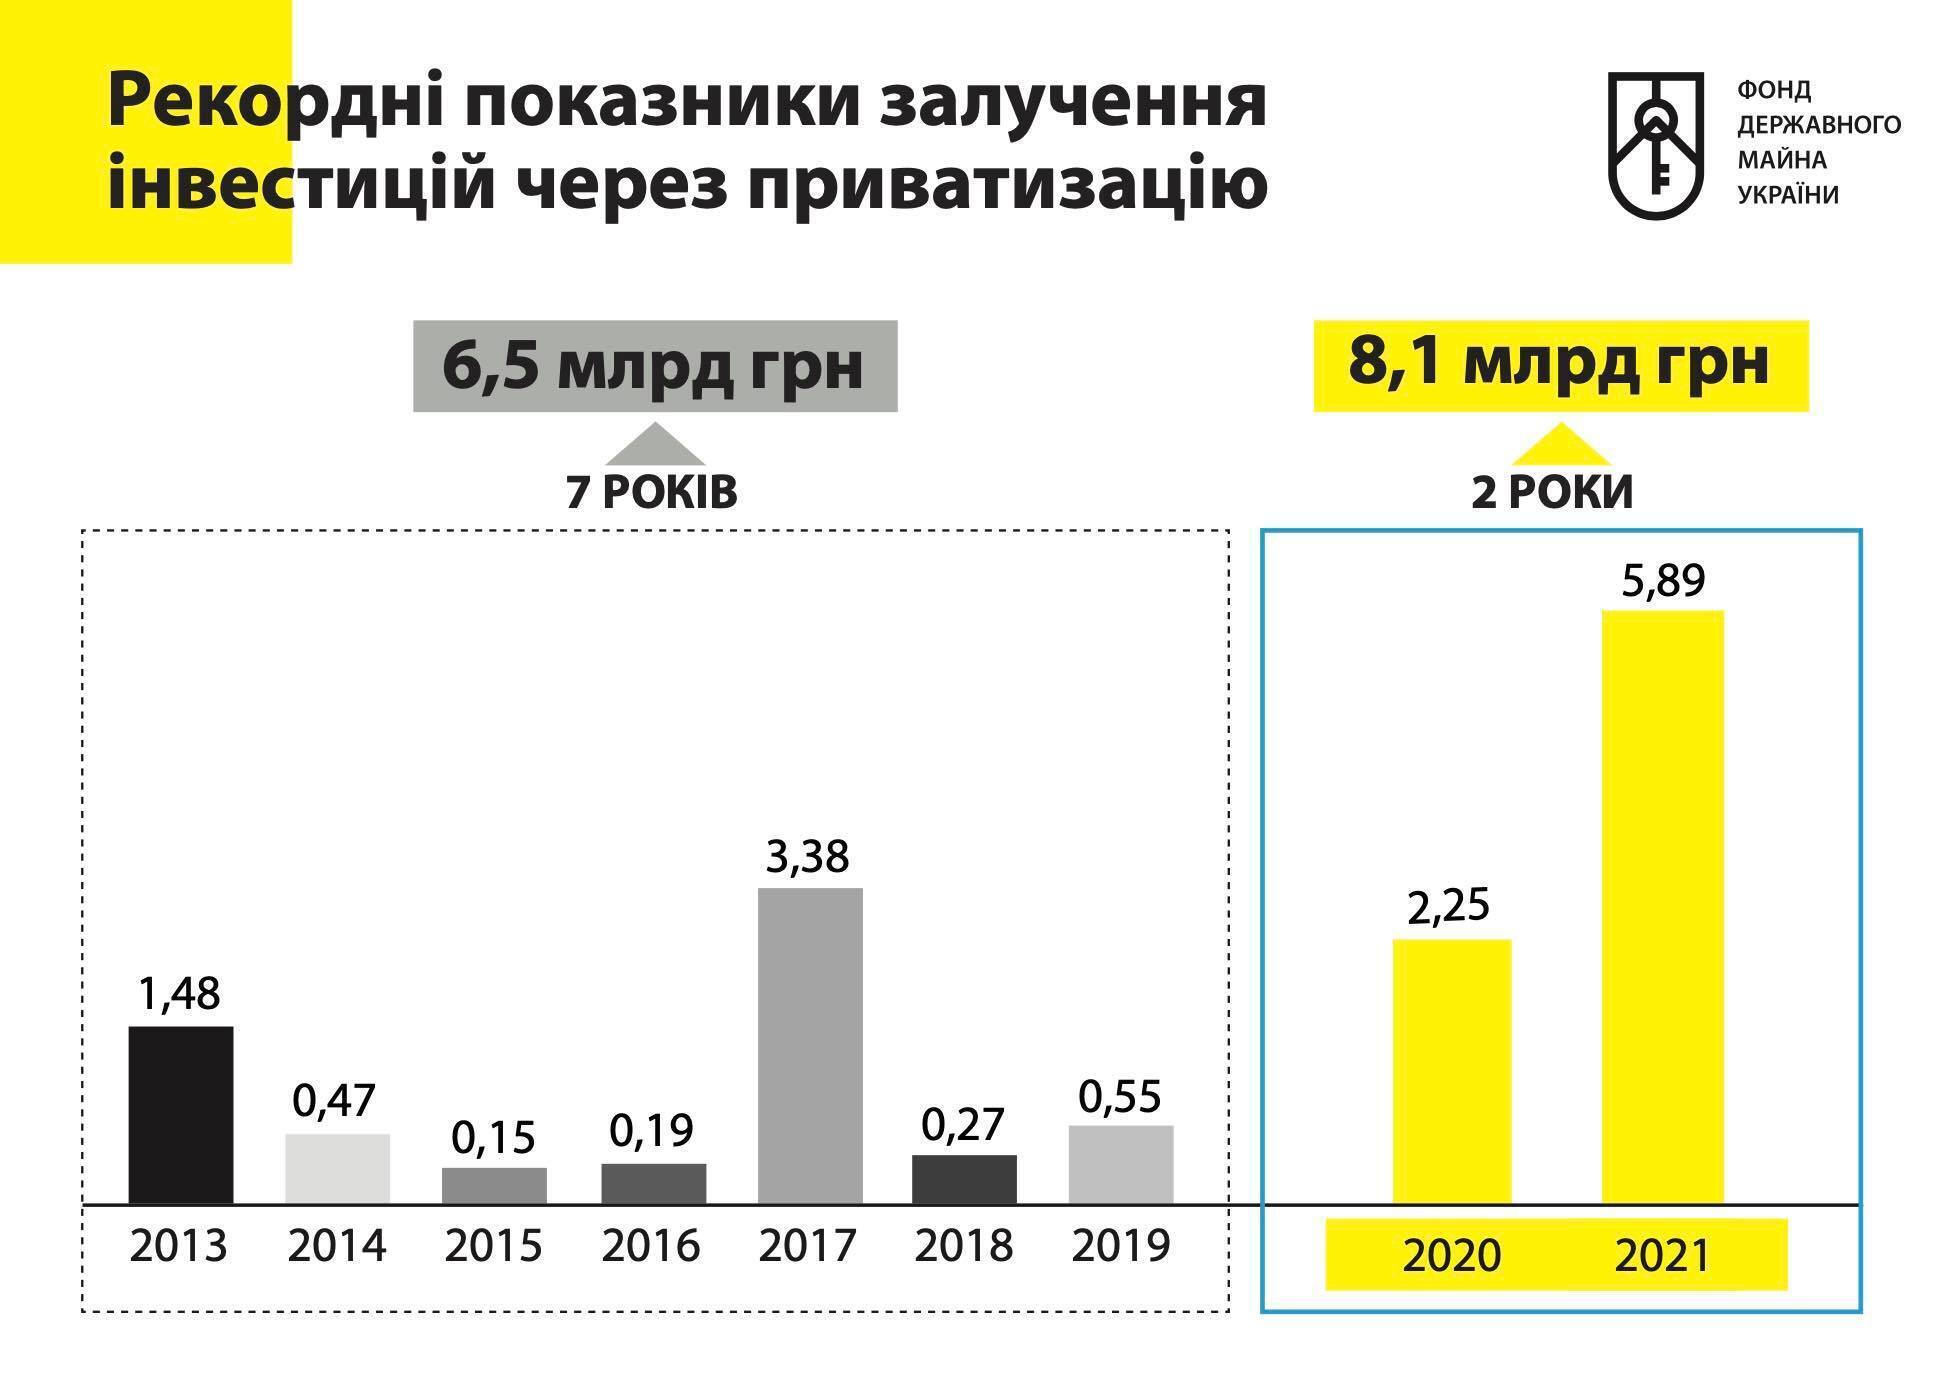 Почти 1,5 млрд грн поступило в бюджет с приватизации "Большевика"